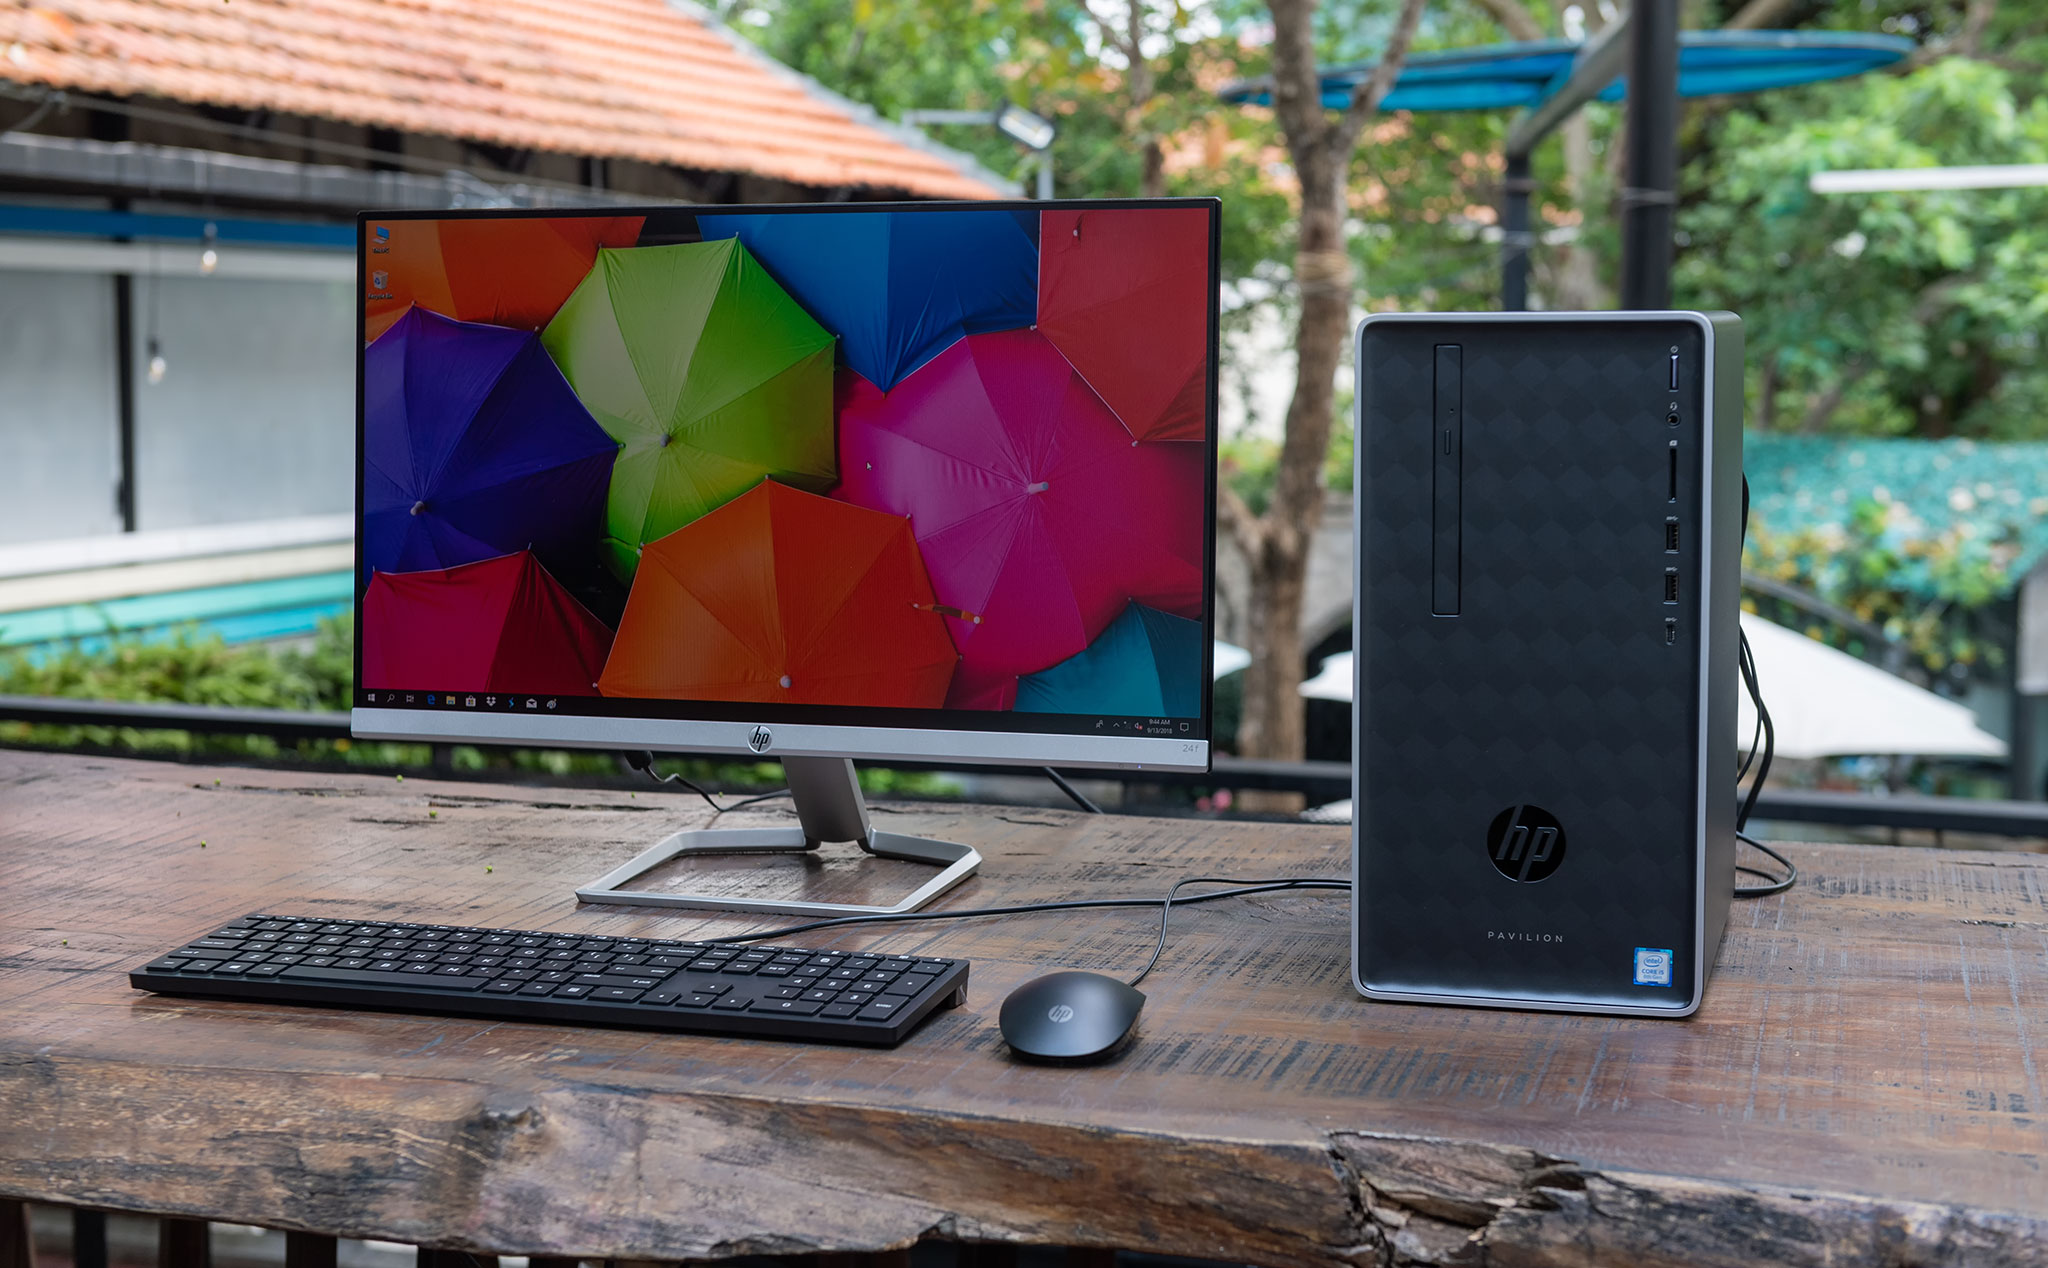 Đánh giá desktop HP Pavilion 590 - Nhỏ gọn, vận hành êm, điện năng tiêu thụ thấp